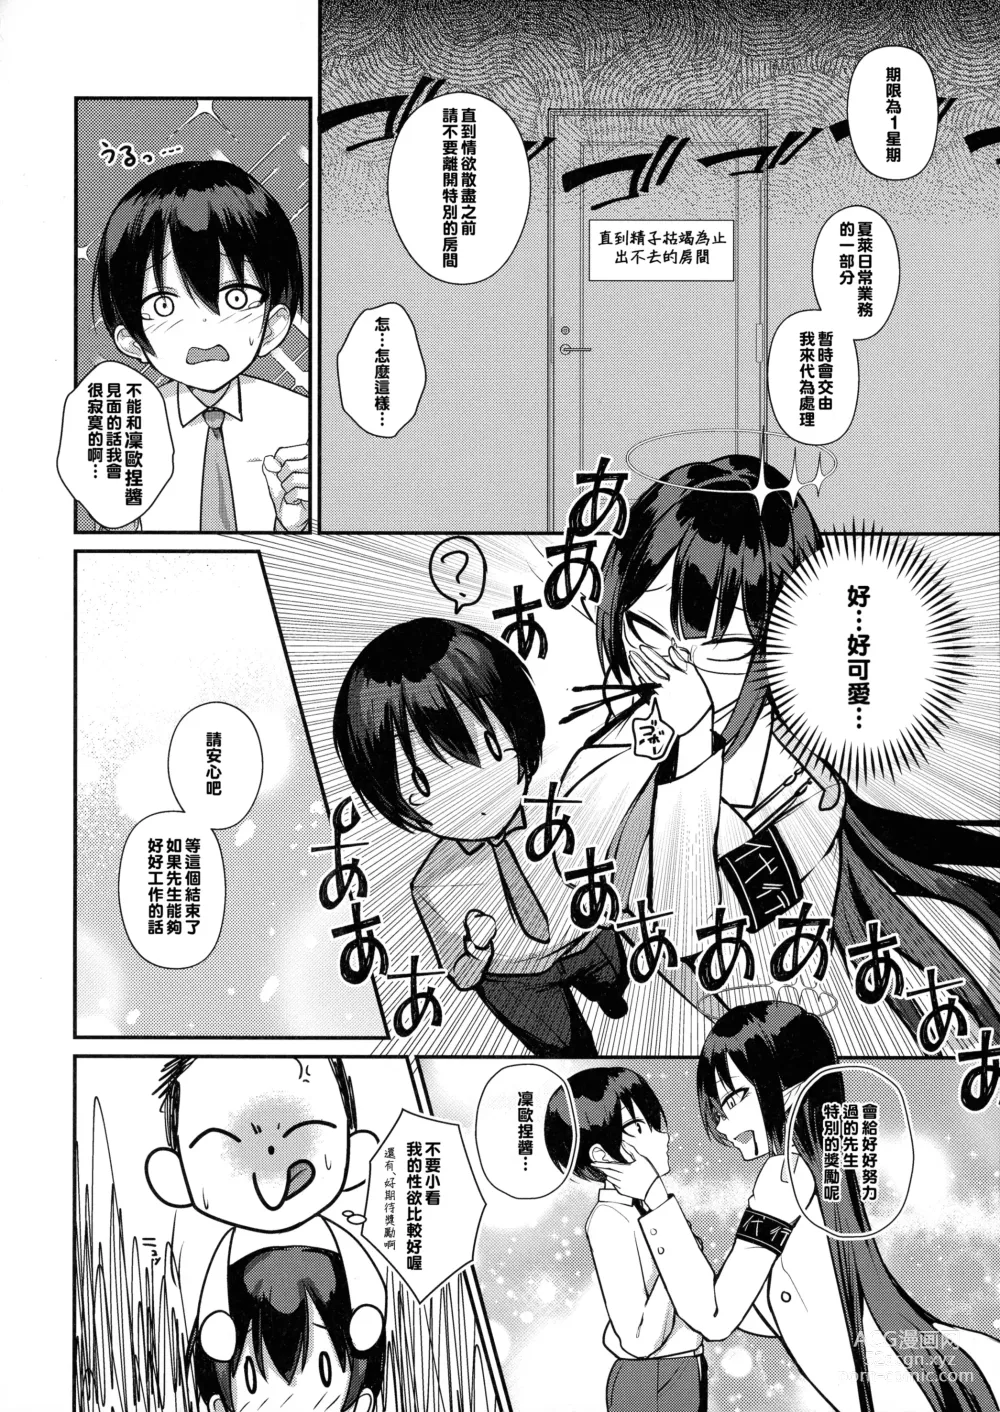 Page 6 of doujinshi Shota Sensei no Seishori Touban Nisshi ~Mireniamu Gakuen C&C Ichinose Asuna Kakutate Karin Hen~